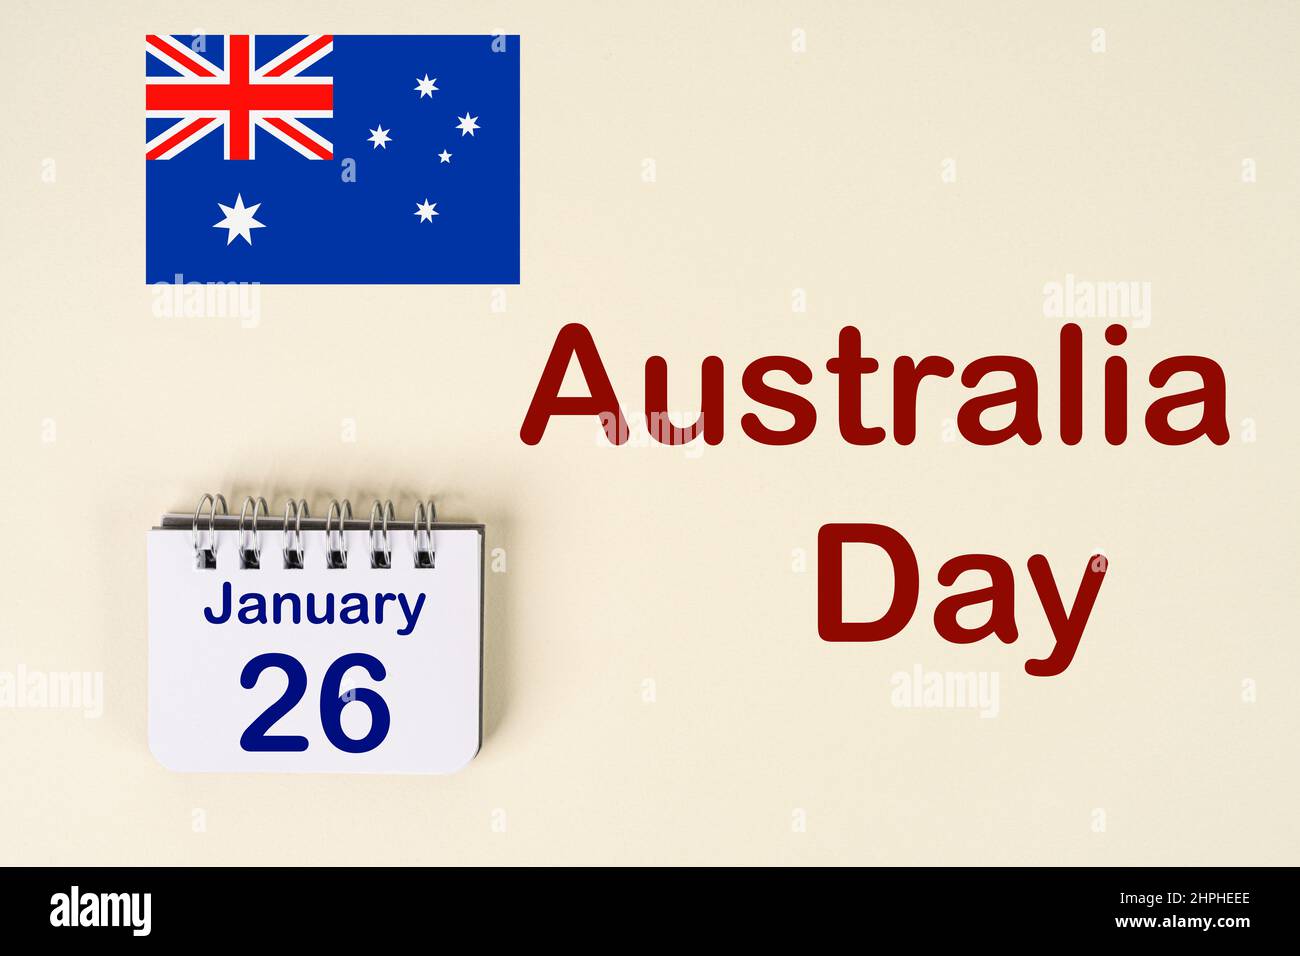 Die Feier des australischen Tages mit der australischen Flagge und dem Kalender, der den 26. Januar anzeigt Stockfoto